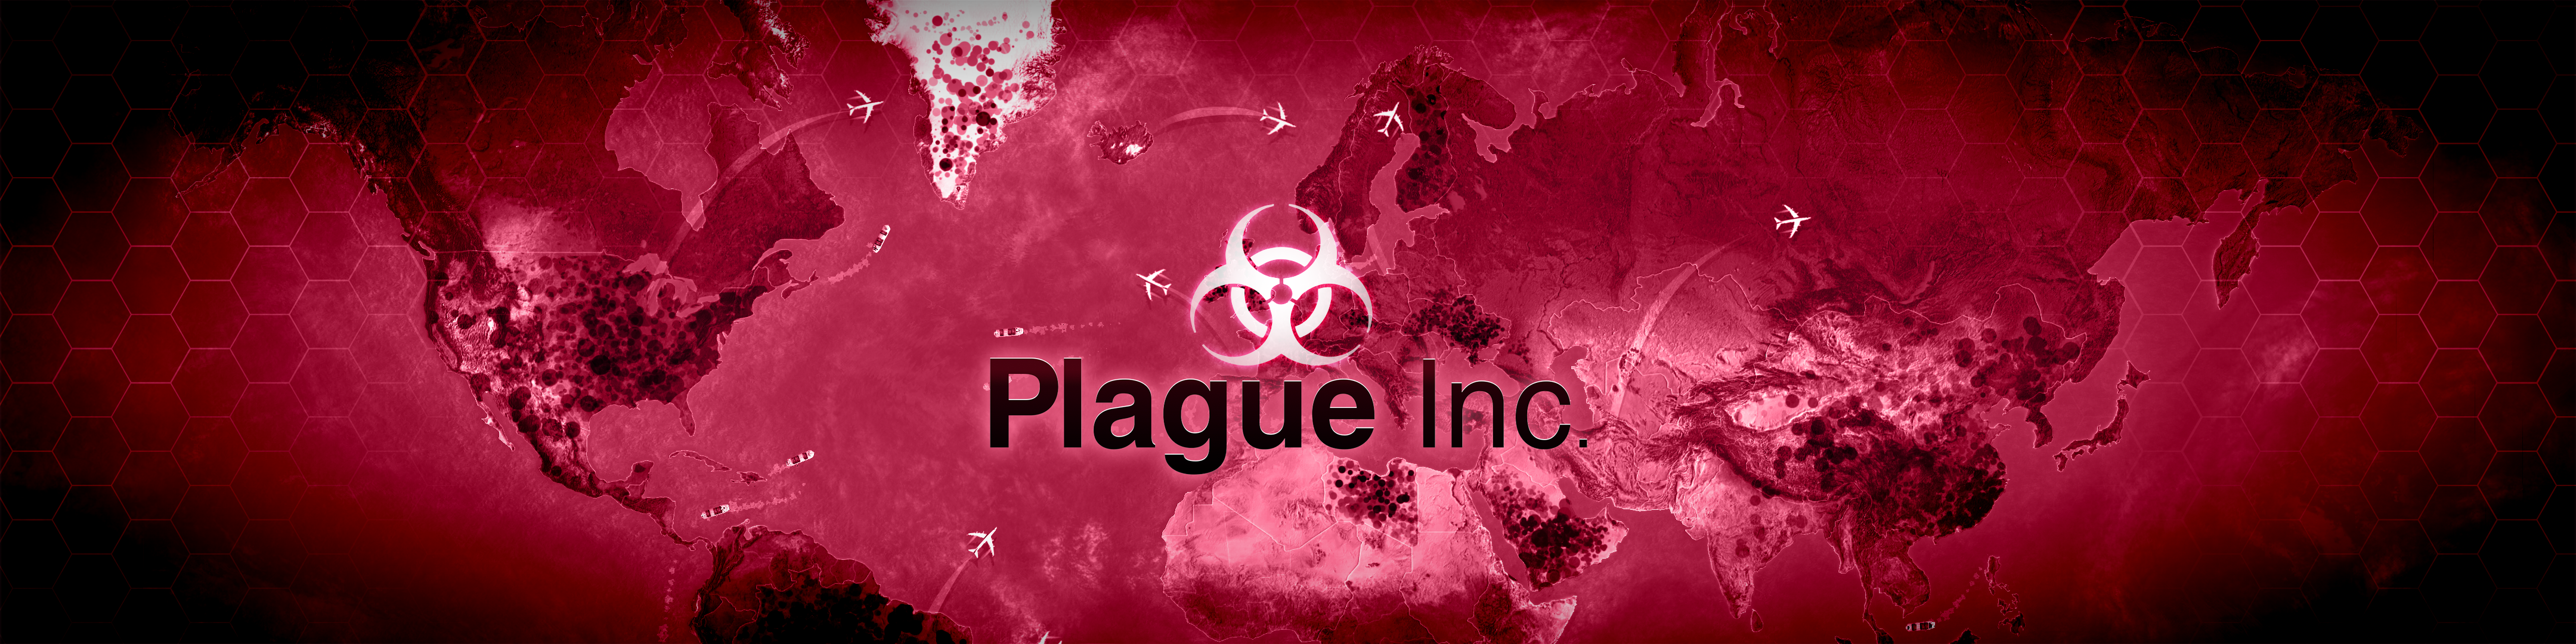 Plague Inc 伝染病株式会社 Overview Apple App Store Japan